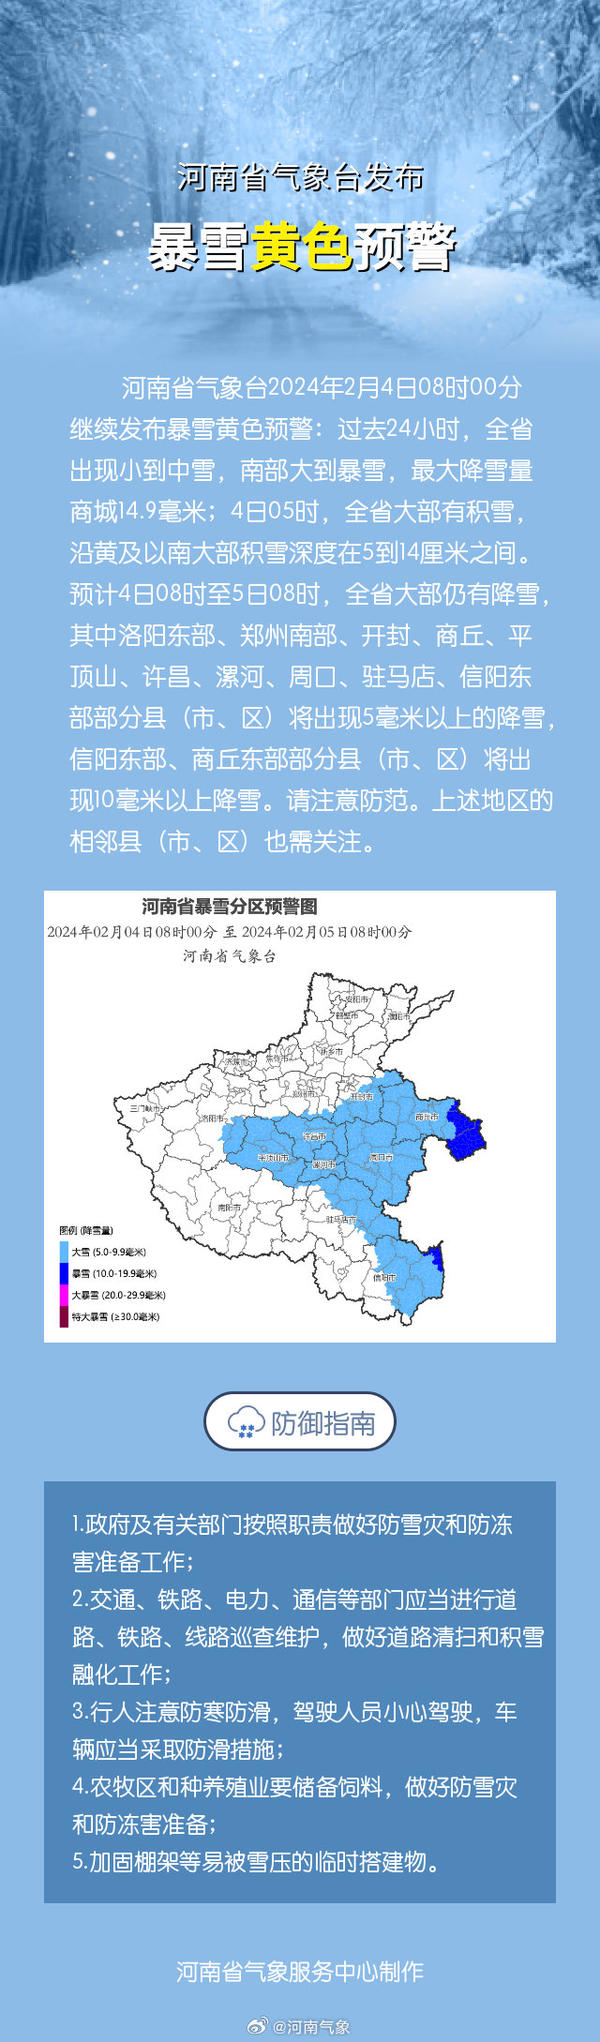 河南省气象台发布暴雪黄色预警